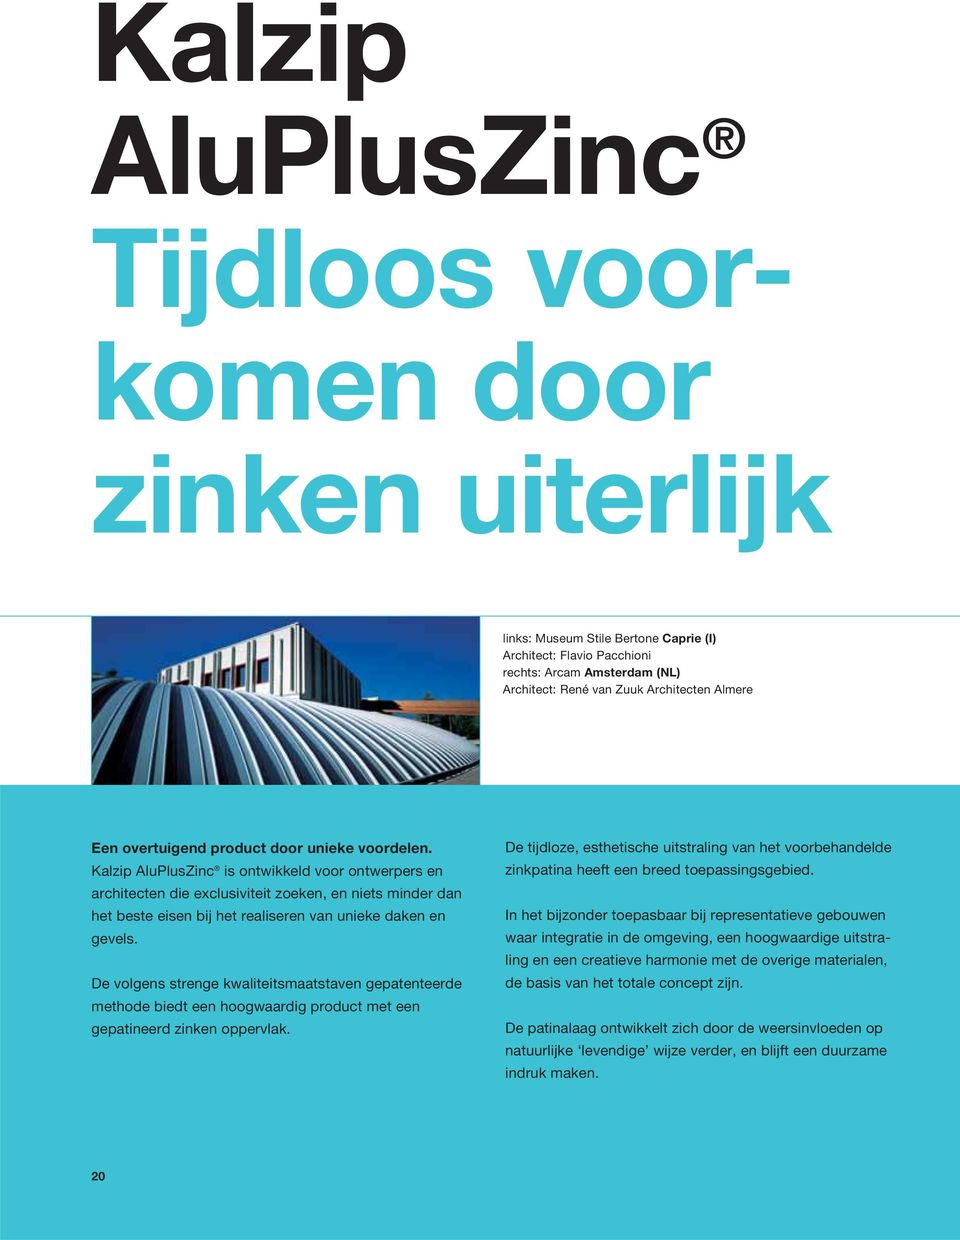 Kalzip AluPlusZinc is ontwikkeld voor ontwerpers en architecten die exclusiviteit zoeken, en niets minder dan het beste eisen bij het realiseren van unieke daken en gevels.